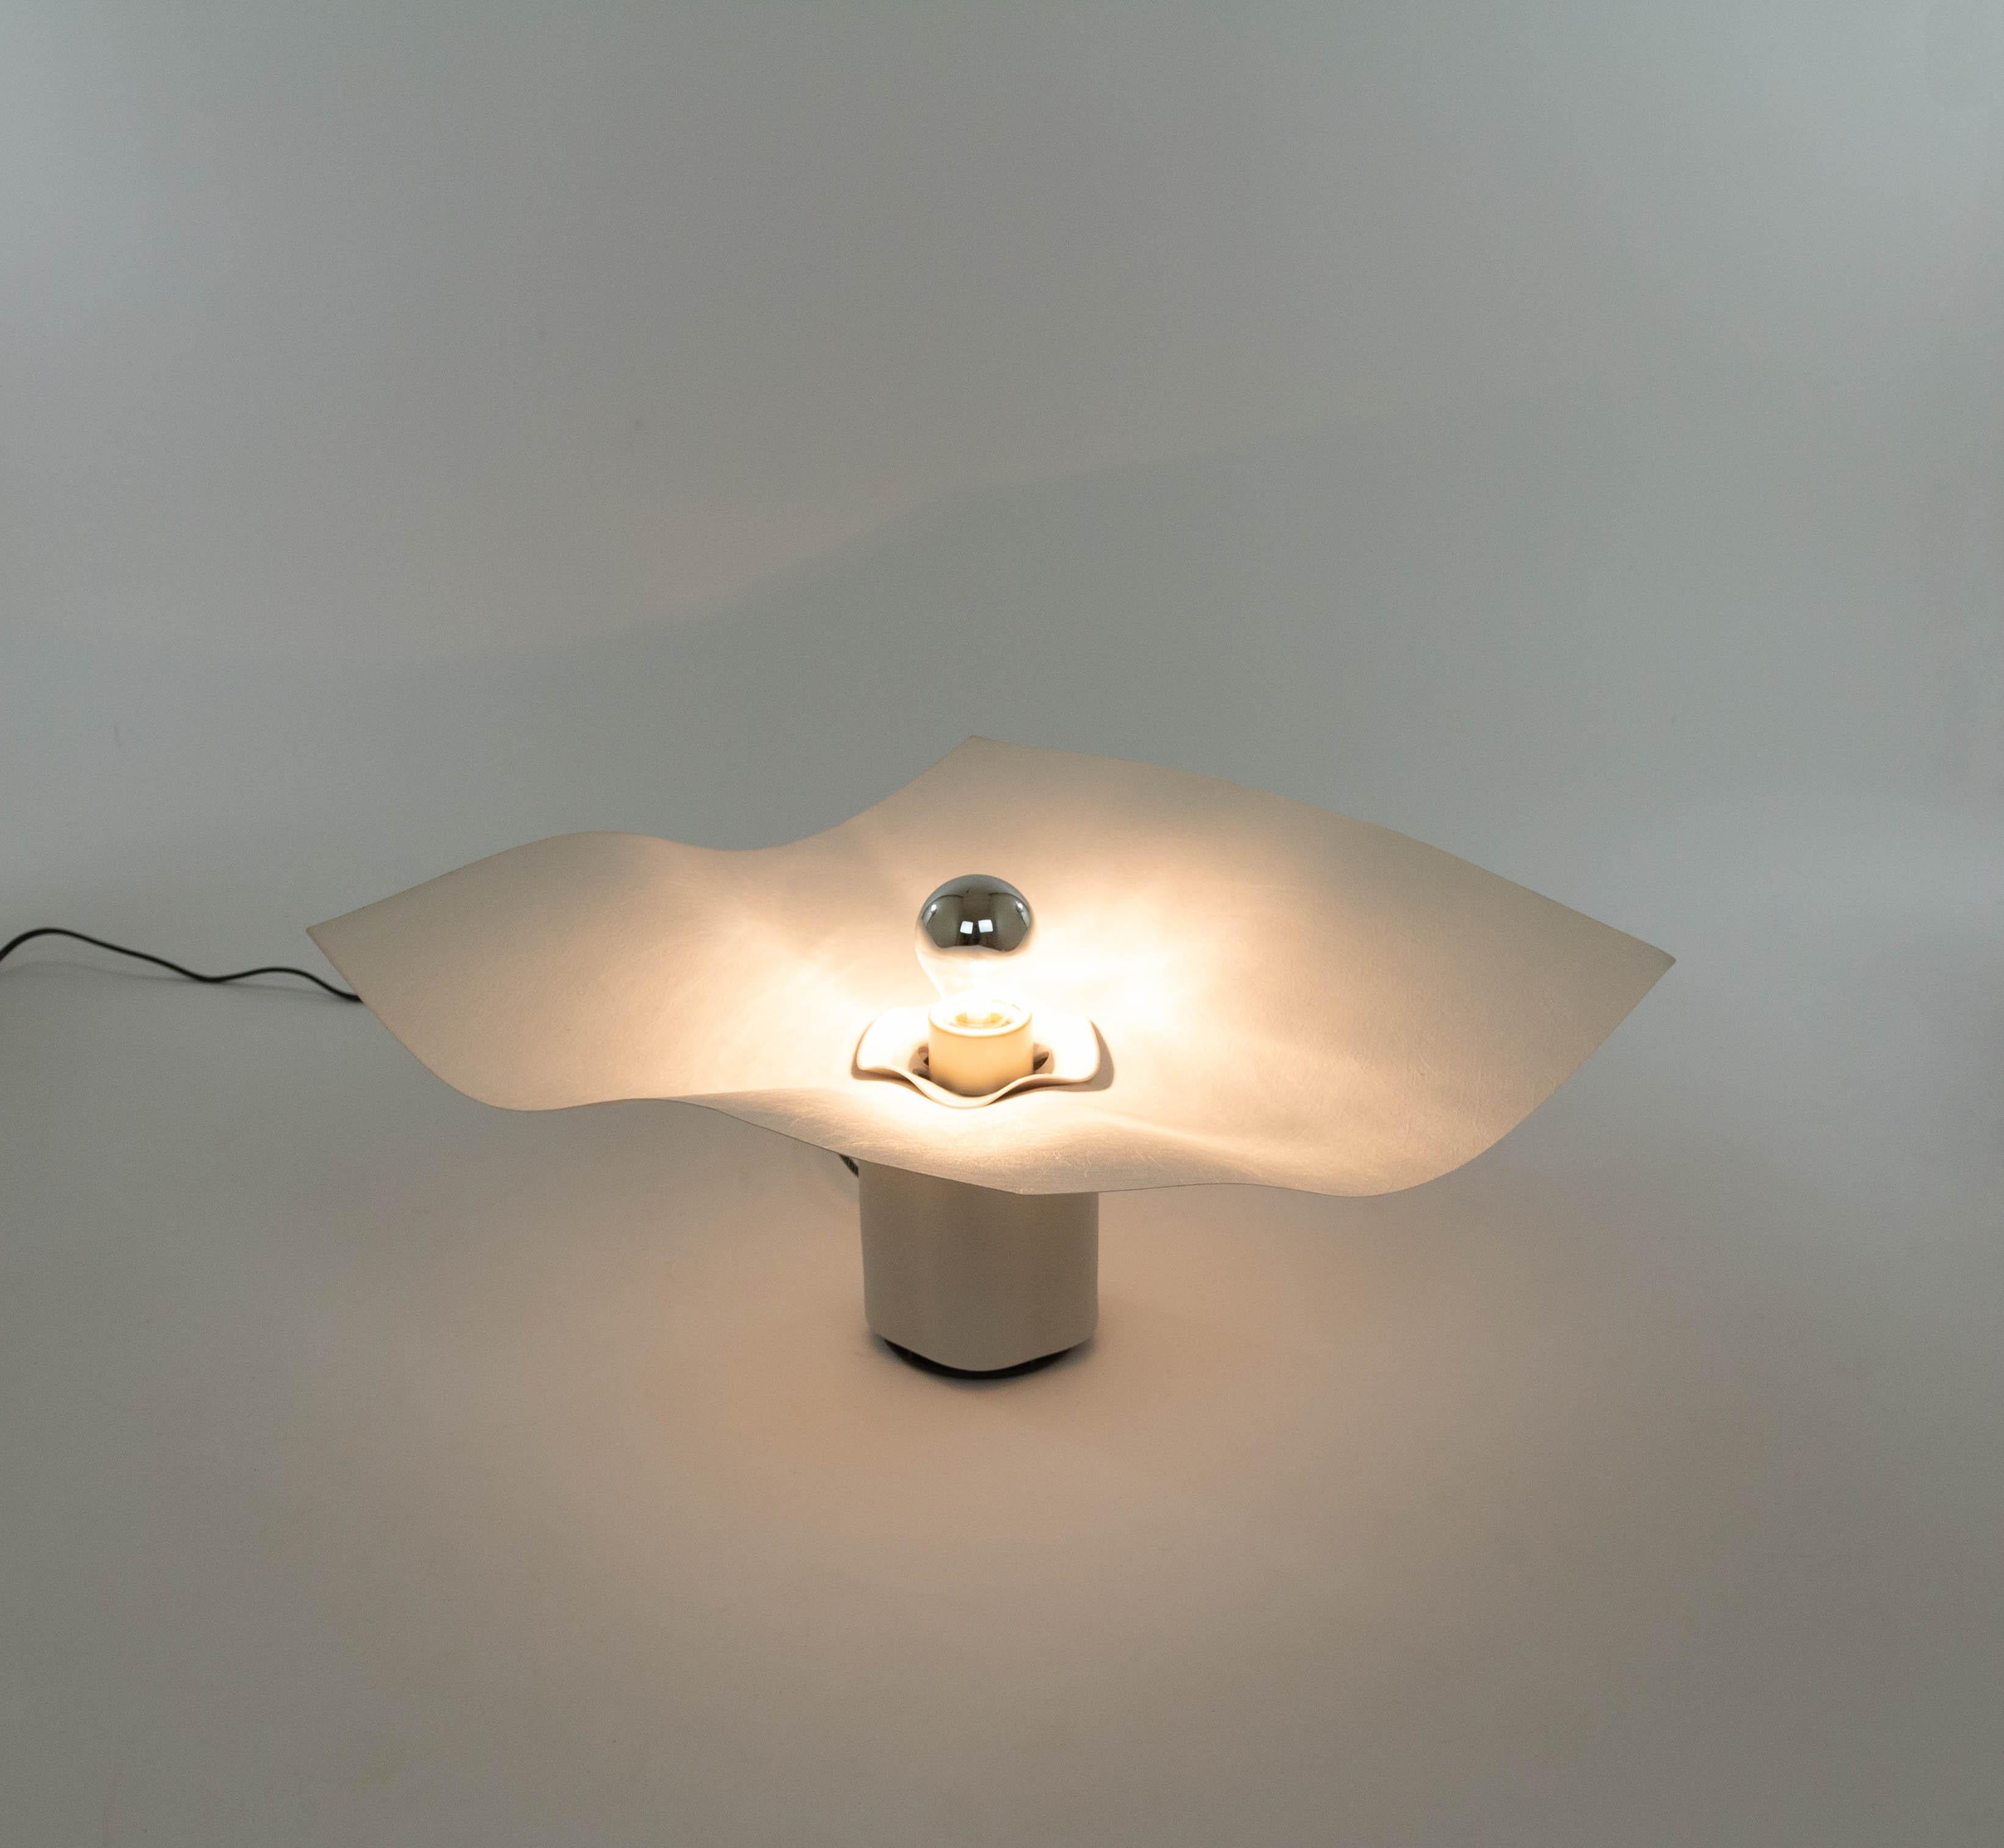 Lampe de table Area 50, conçue par Mario Bellini et fabriquée par Artemide dans les années 1970.

La lampe se compose d'une base en porcelaine blanche mate (18 cm de haut) et d'un diffuseur couleur crème en textile synthétique. Une pièce en